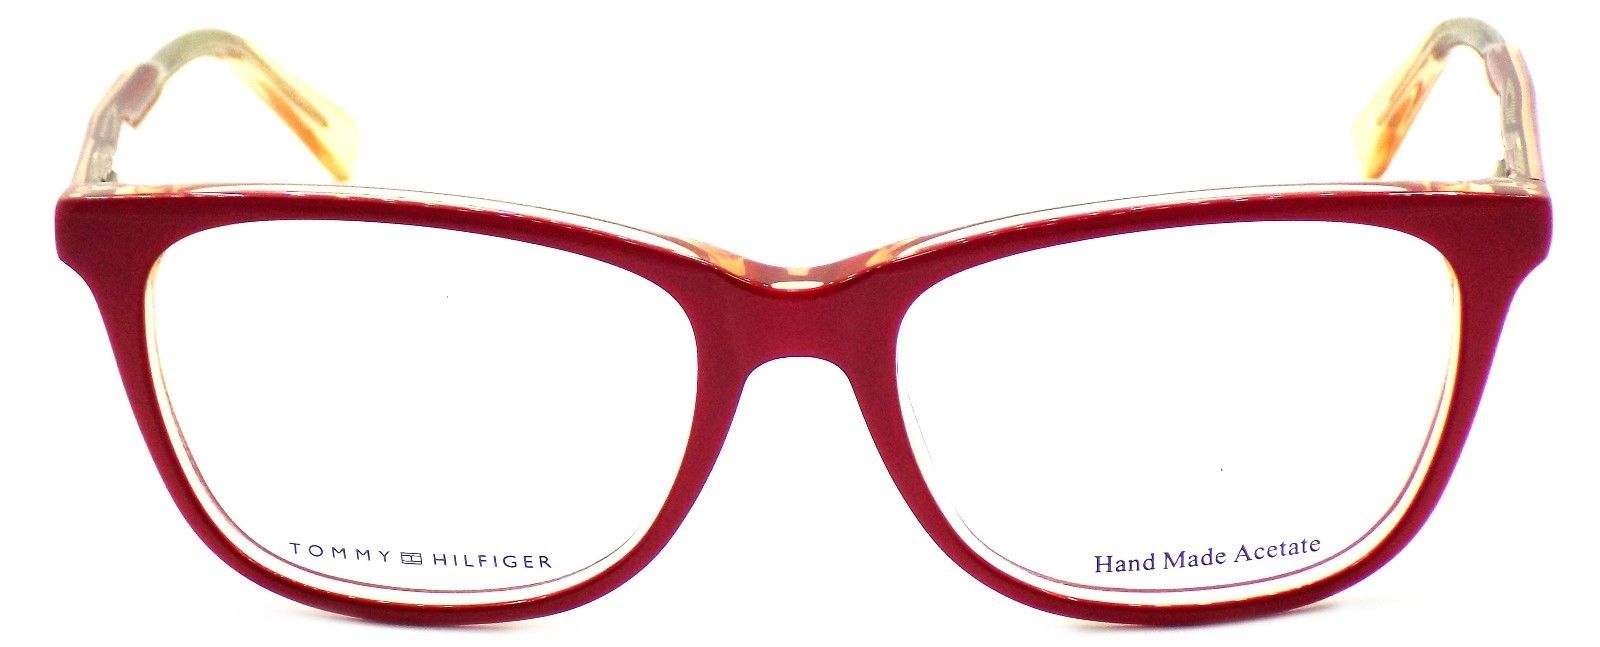 2-TOMMY HILFIGER TH 1234 1IN Women's Eyeglasses 52-17-140 Cyclamen Peach + CASE-762753136411-IKSpecs